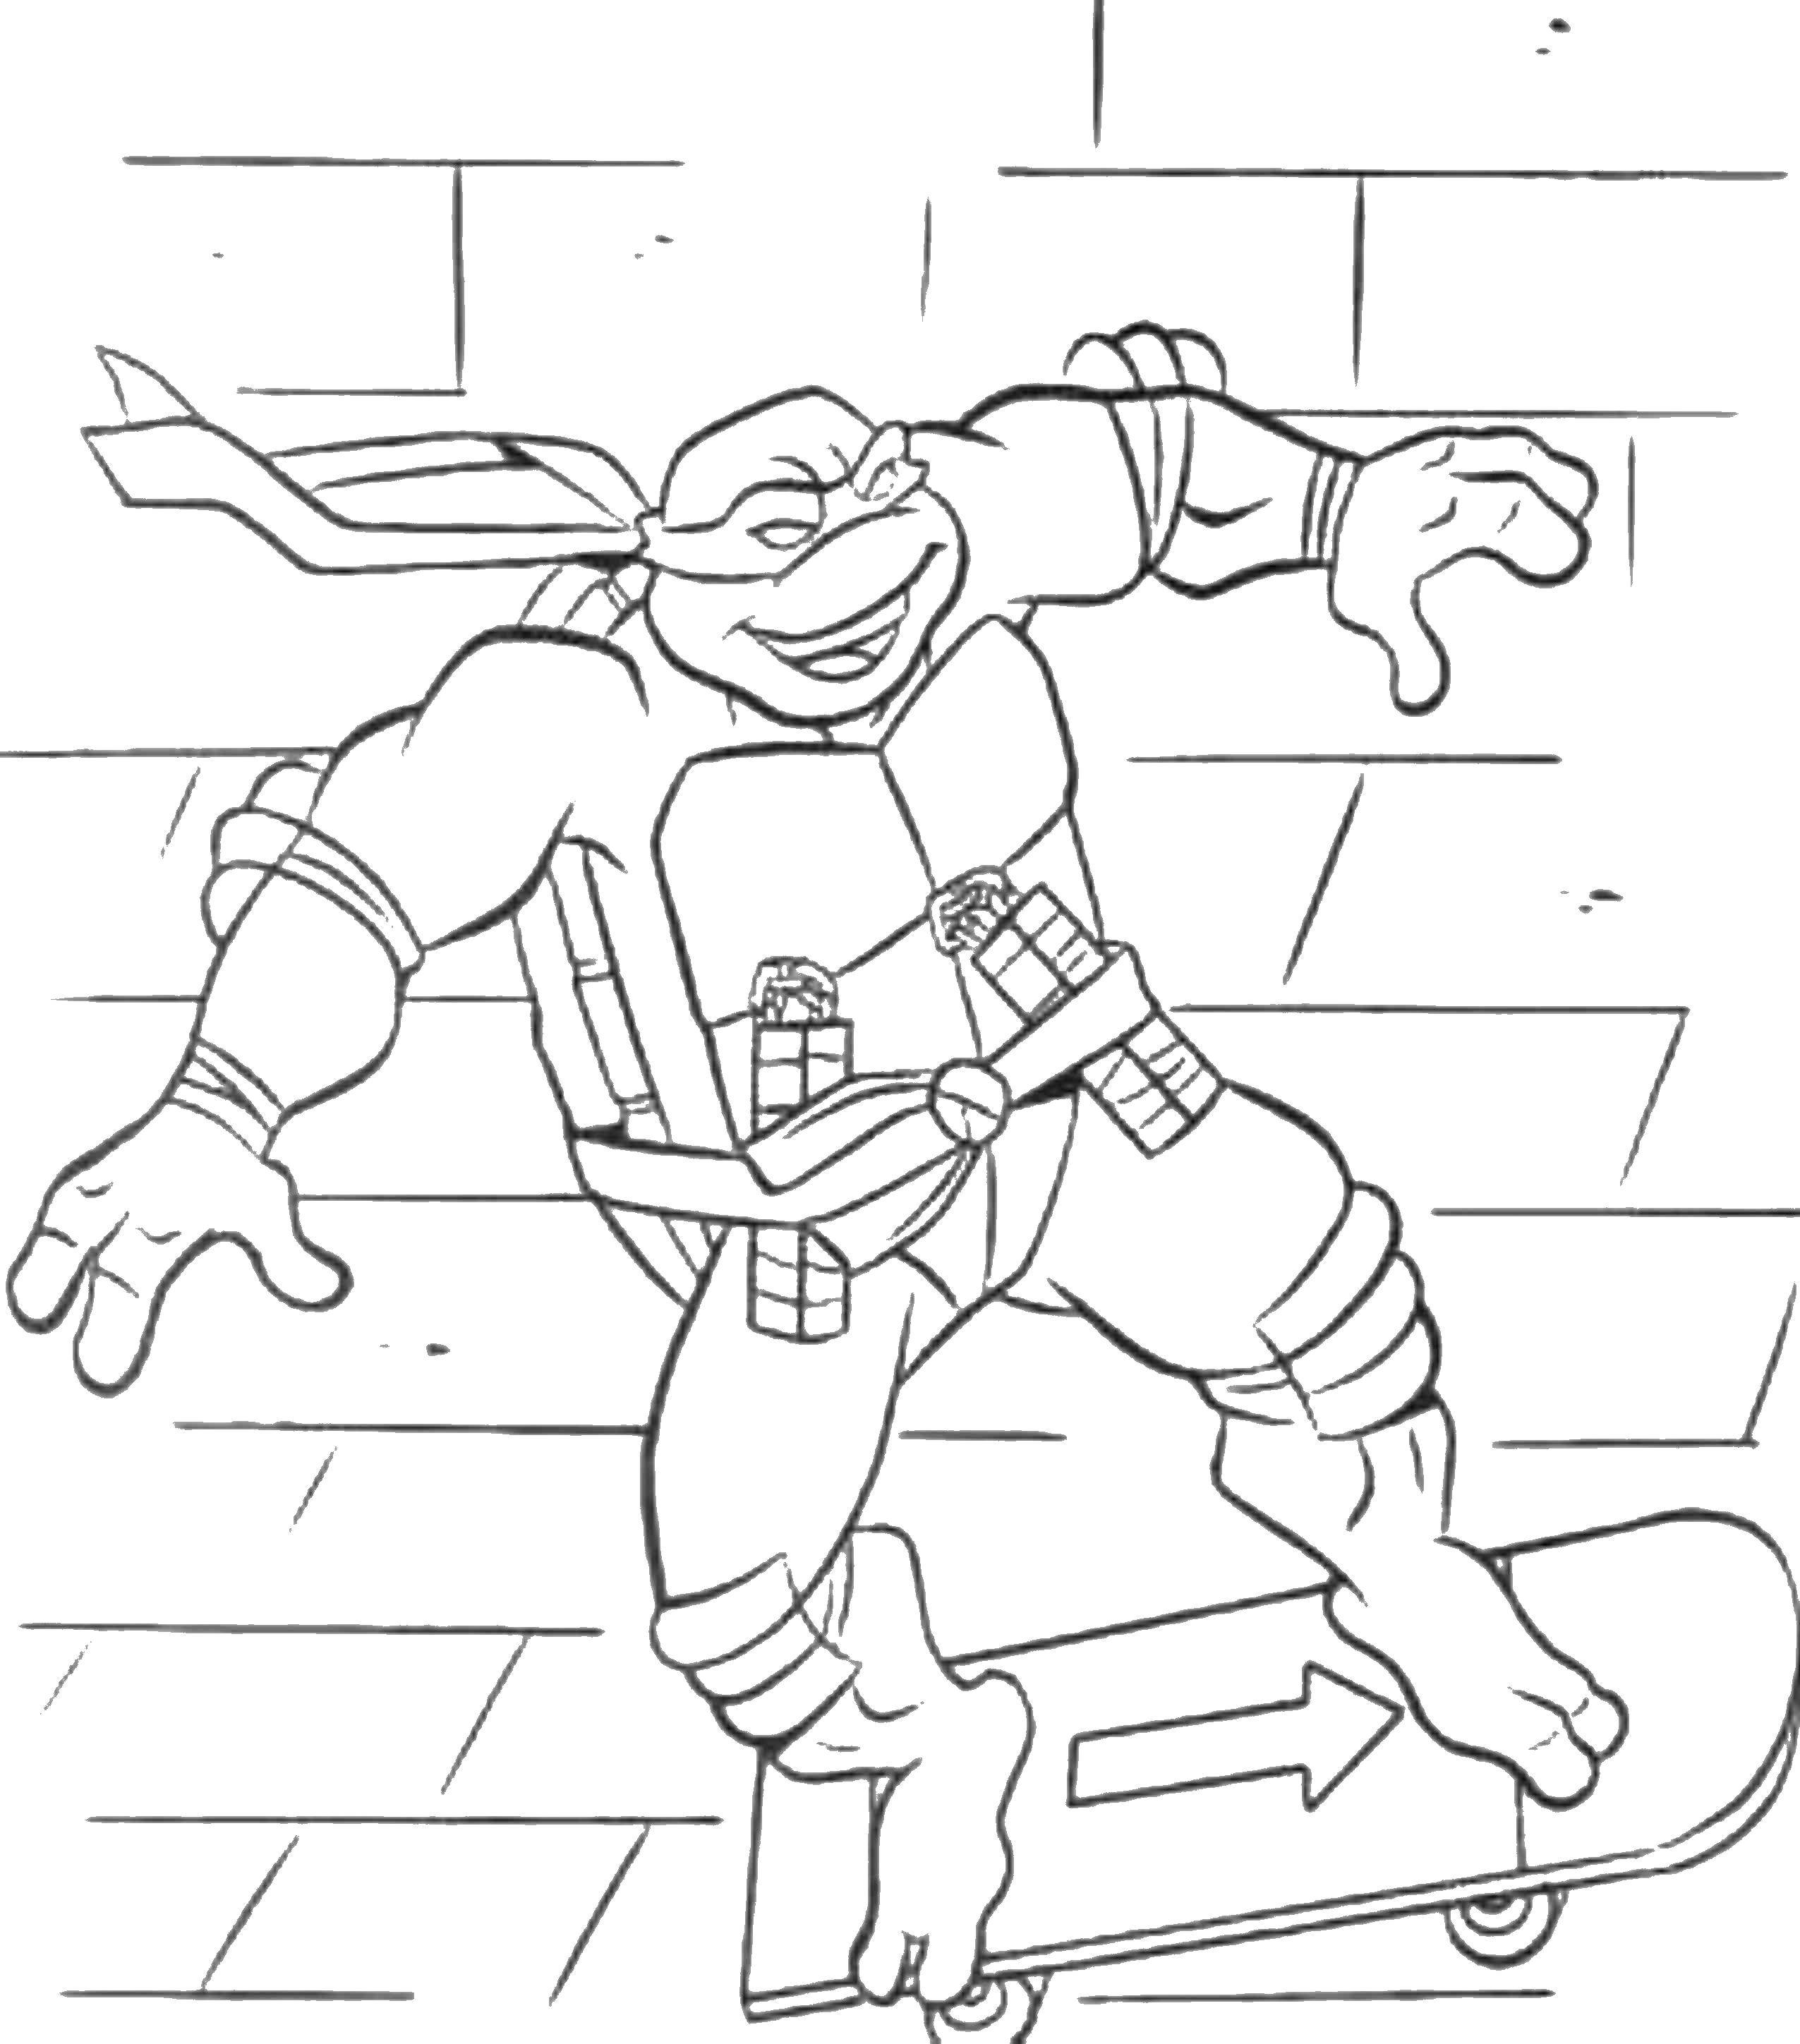 Coloring Ninja turtle on skateboard. Category teenage mutant ninja turtles. Tags:  cartoons, ninja turtles, skateboard.